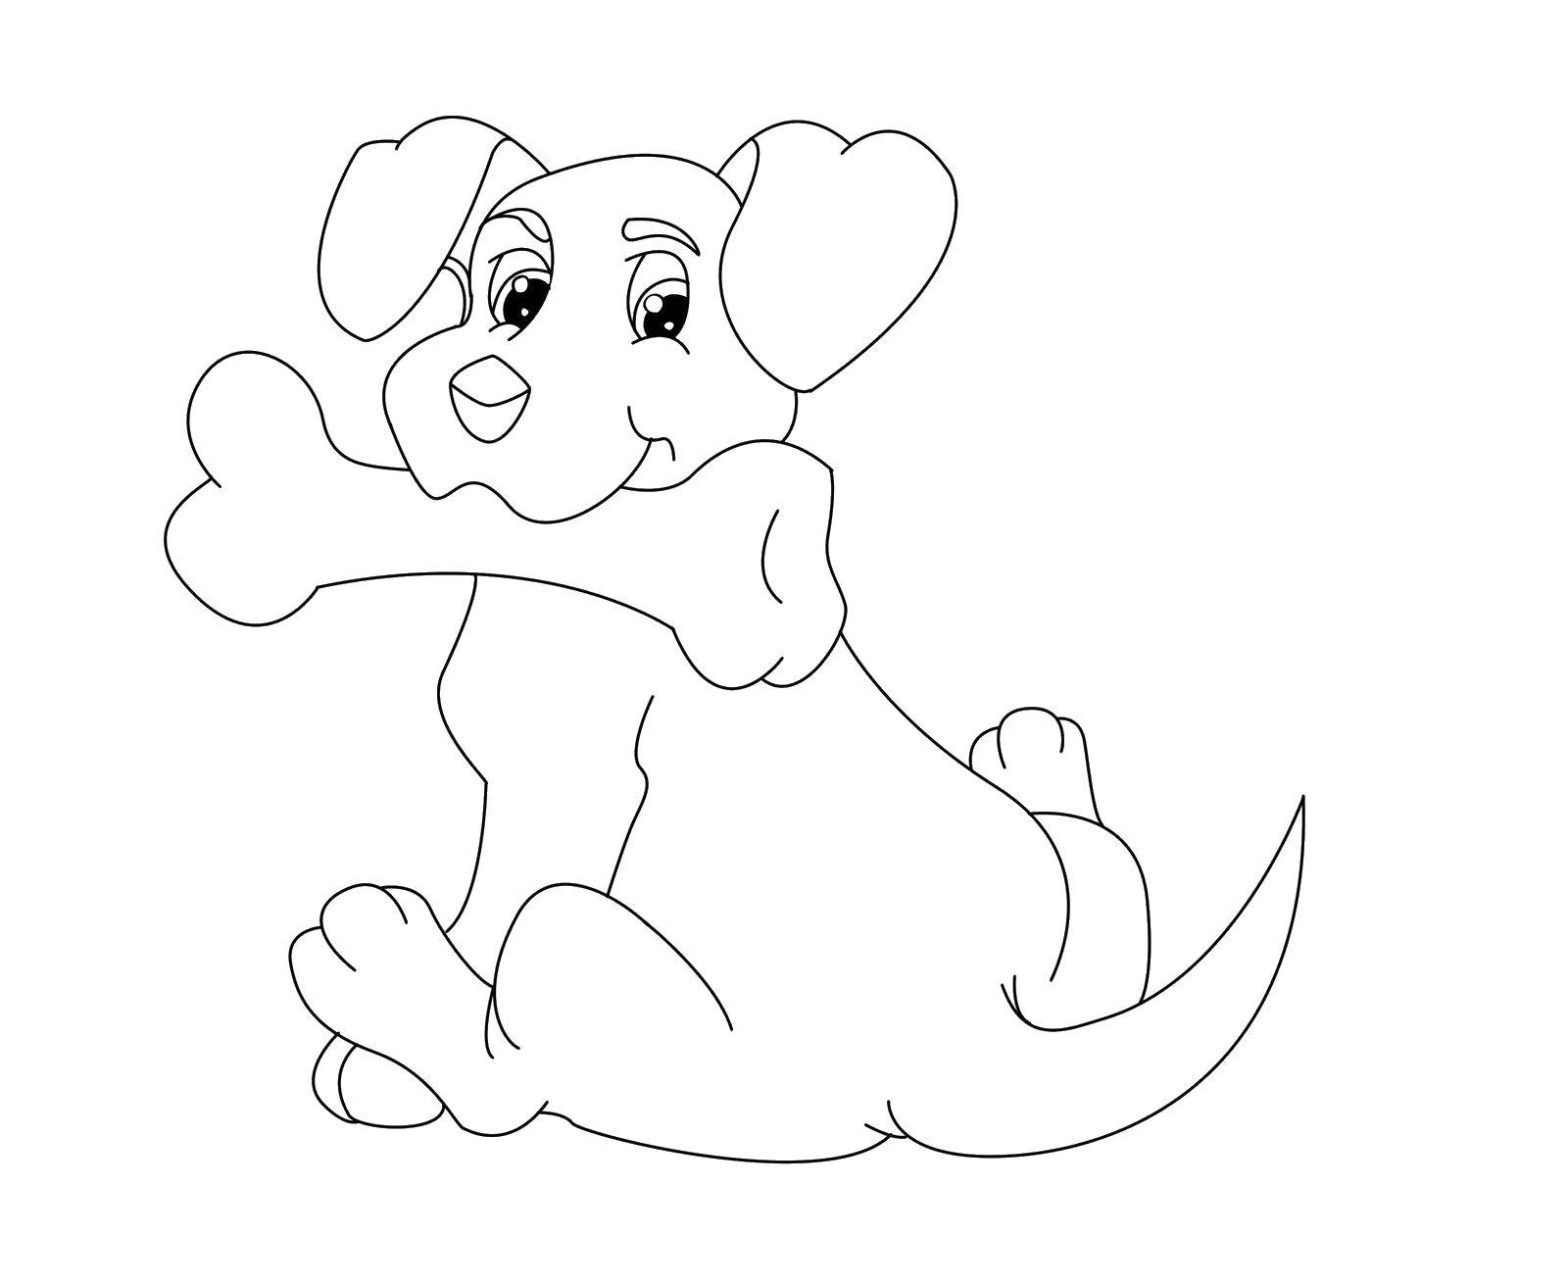 Раскраски животных для детей (распечатки)